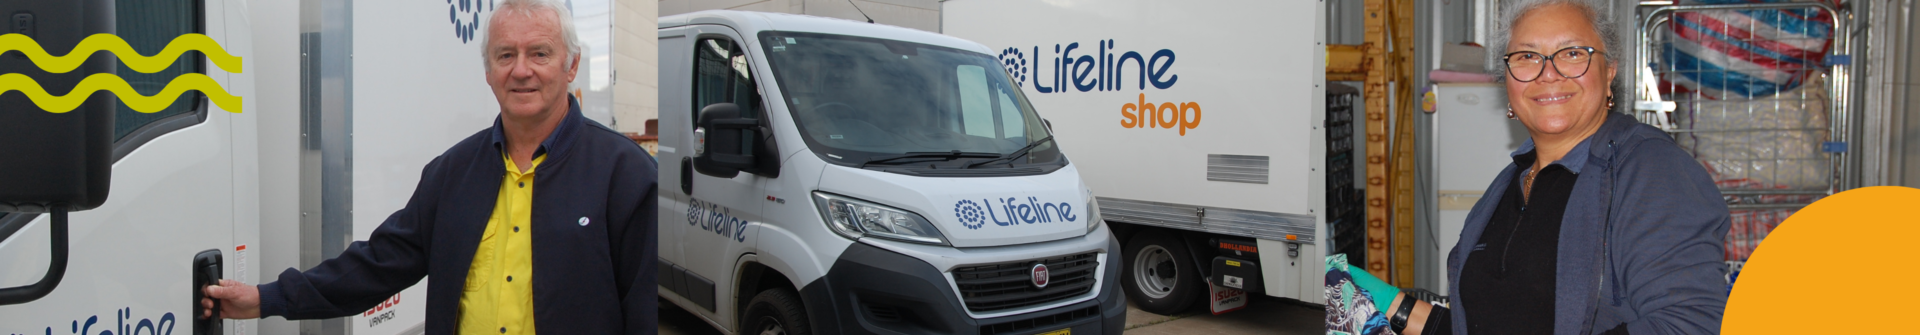 Lifeline shop donations